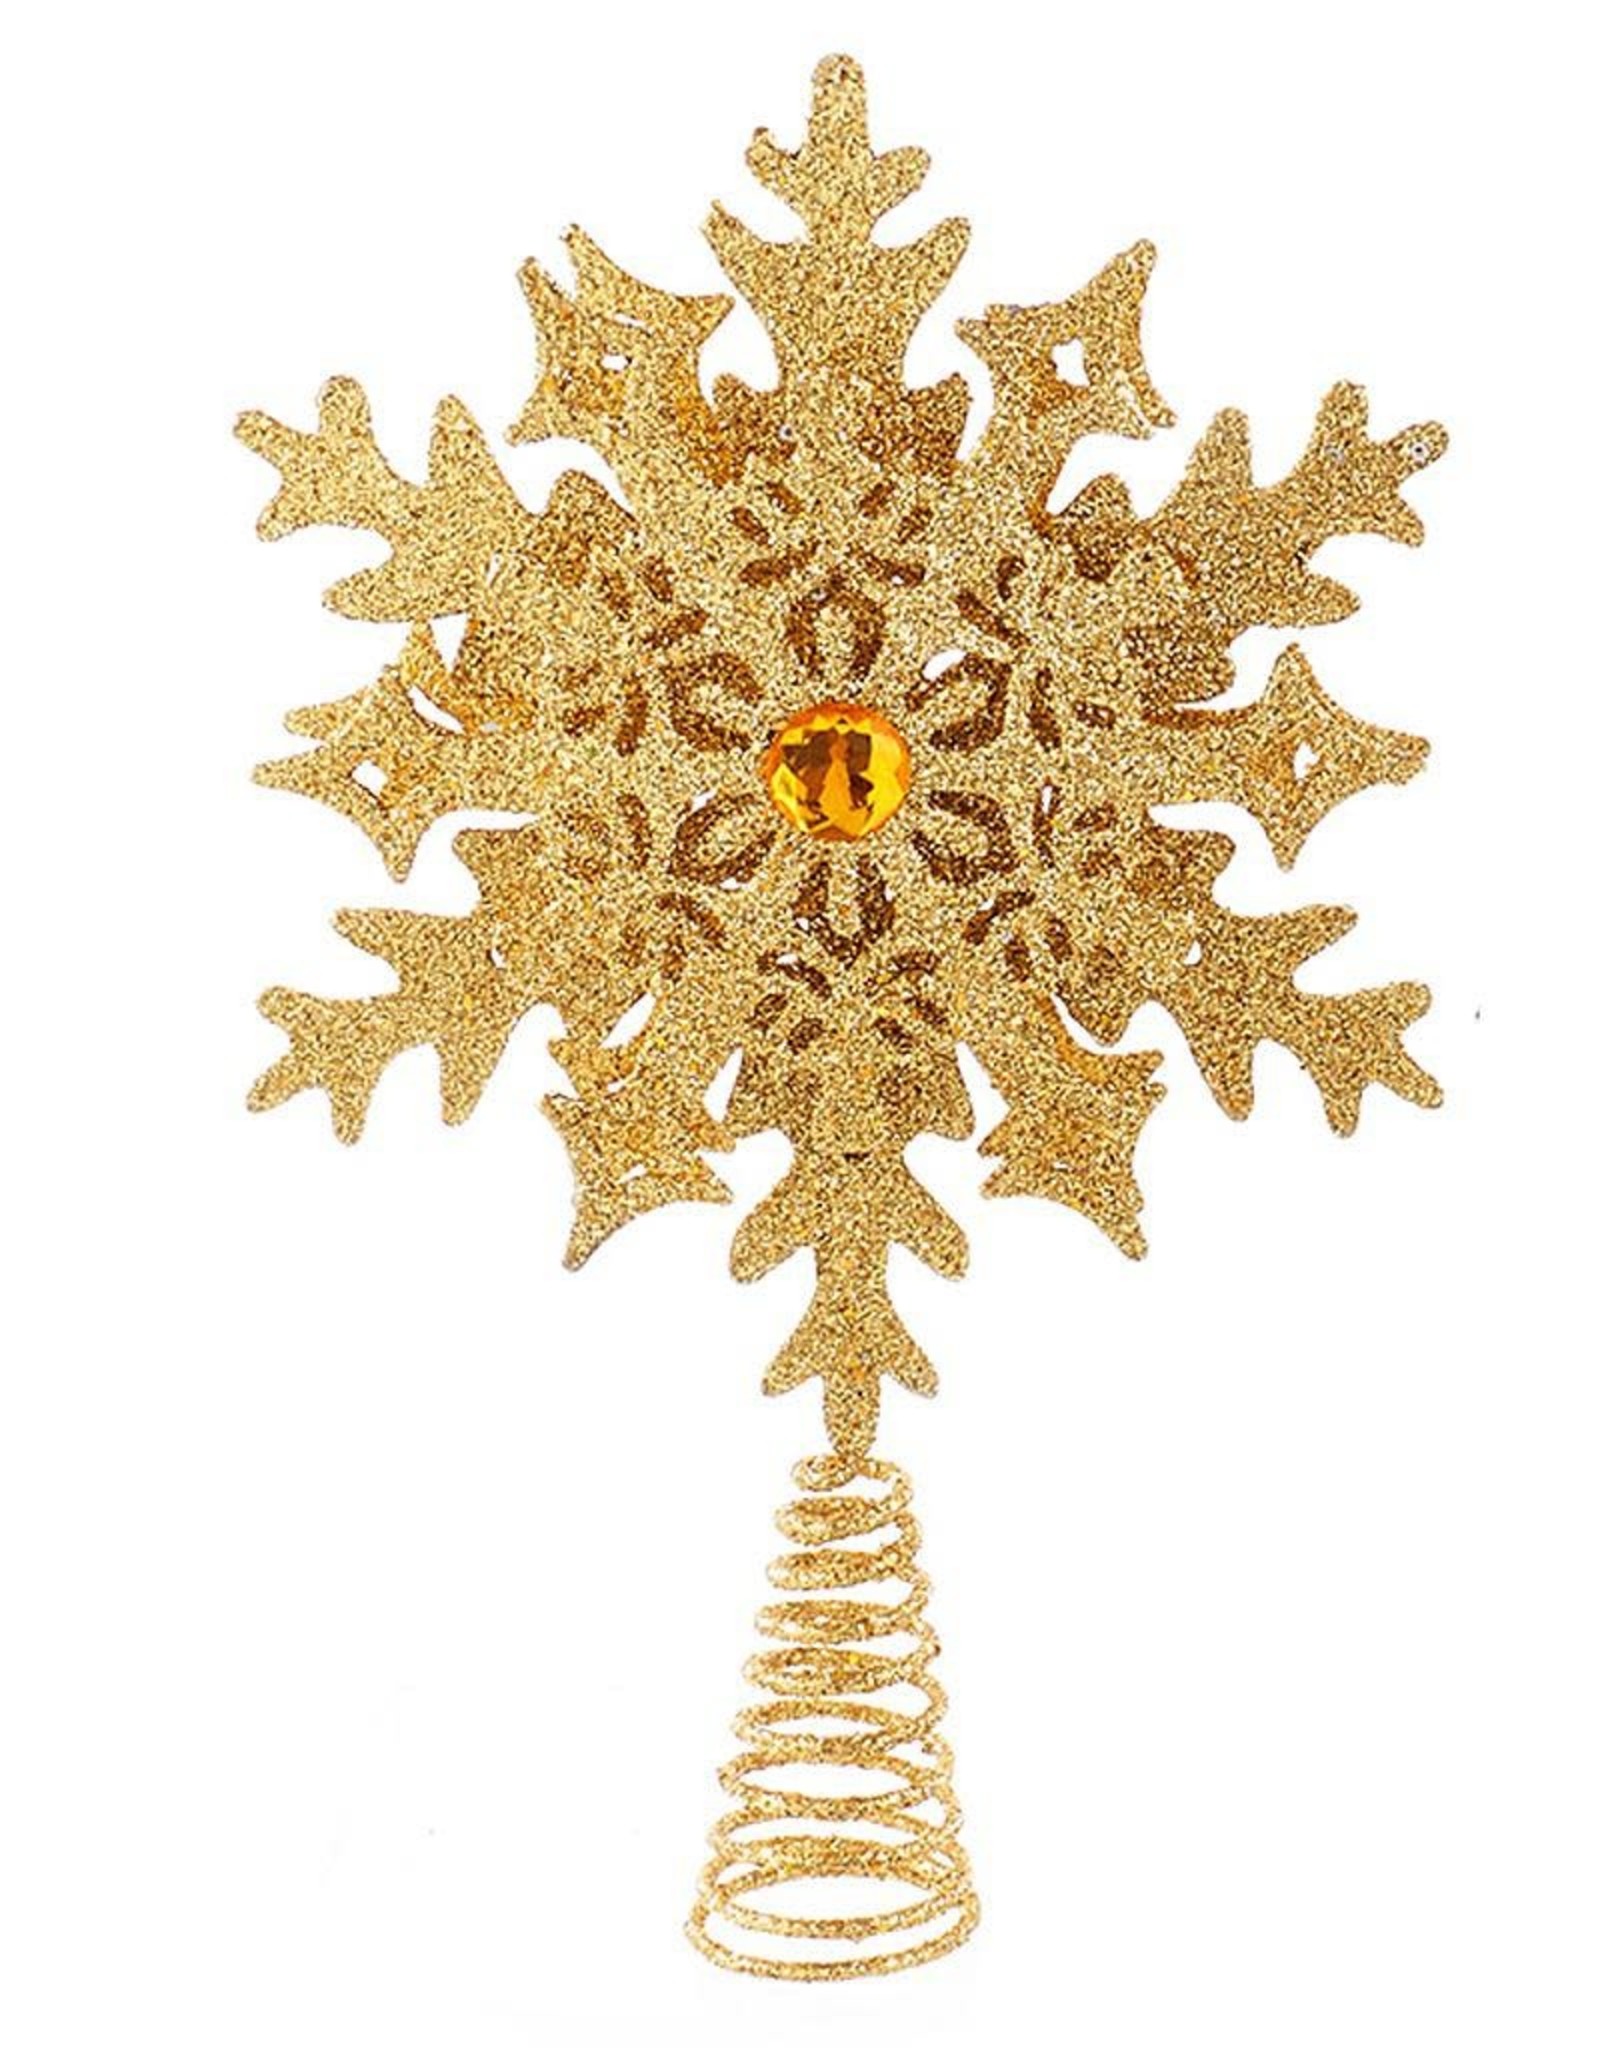 Kurt Adler Glittered Snowflake Christmas Tree Topper 11 Inch GOLD